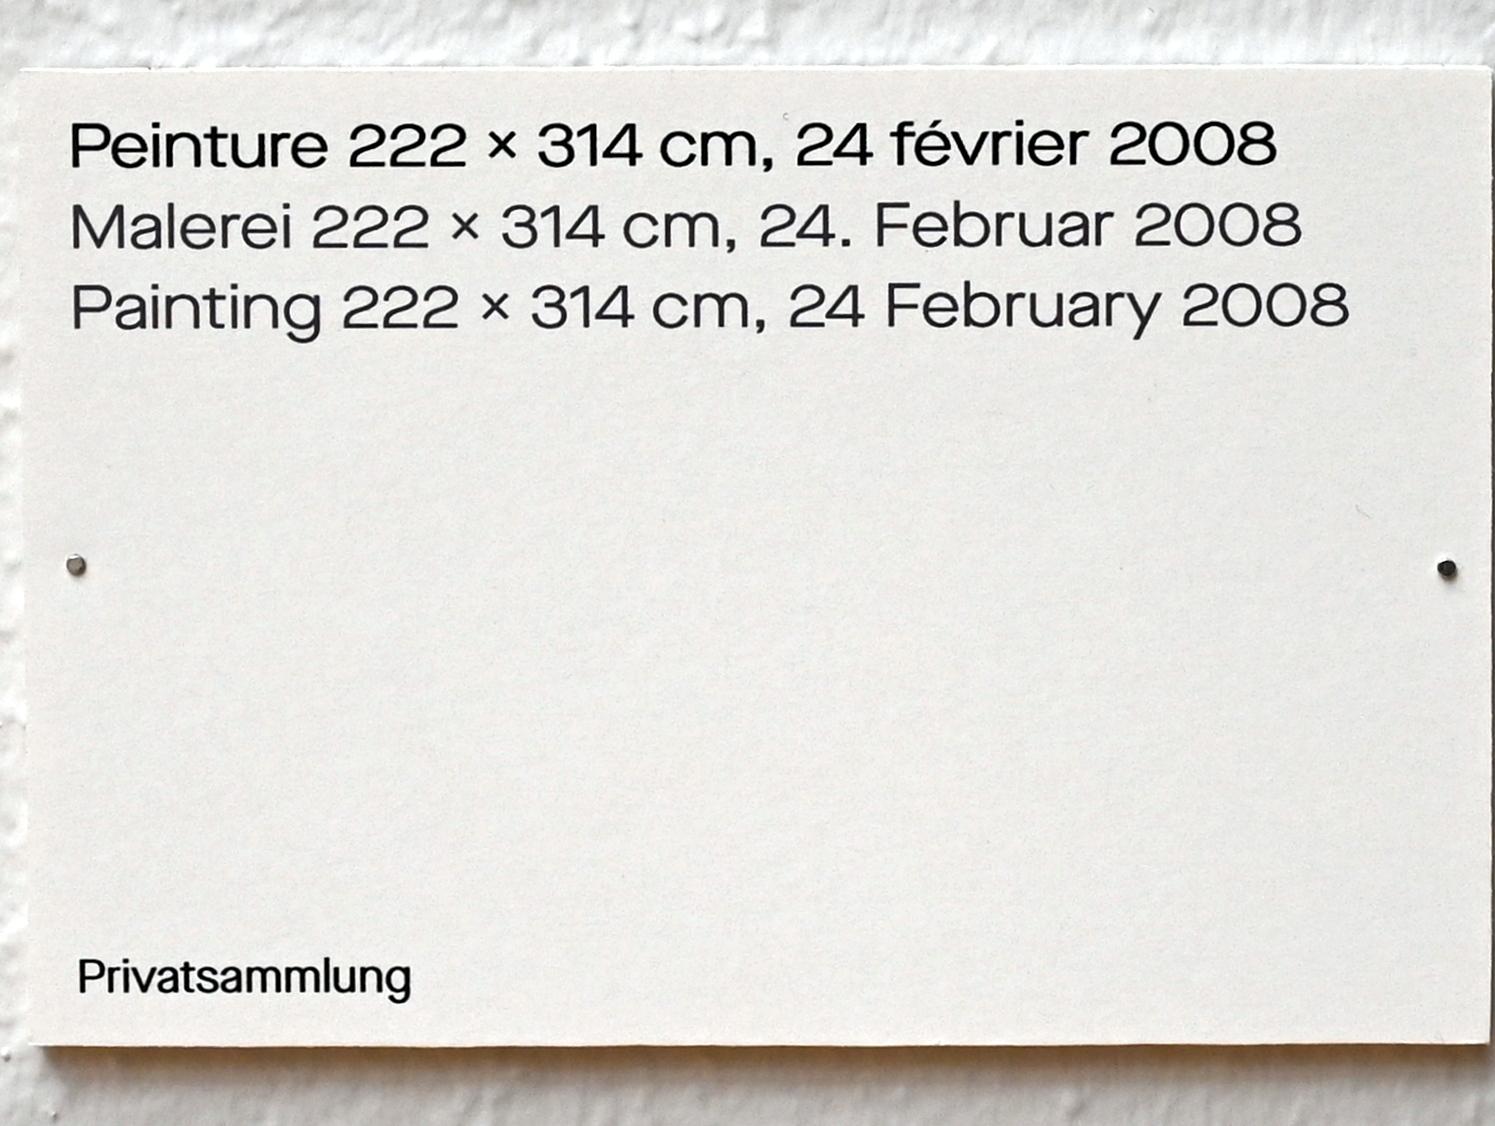 Pierre Soulages (1946–2019), Malerei 222 x 314 cm, 24. Februar 2008, Chemnitz, Kunstsammlungen am Theaterplatz, Ausstellung "Soulages" vom 28.03.-25.07.2021, Saal 1, 2019, Bild 2/2